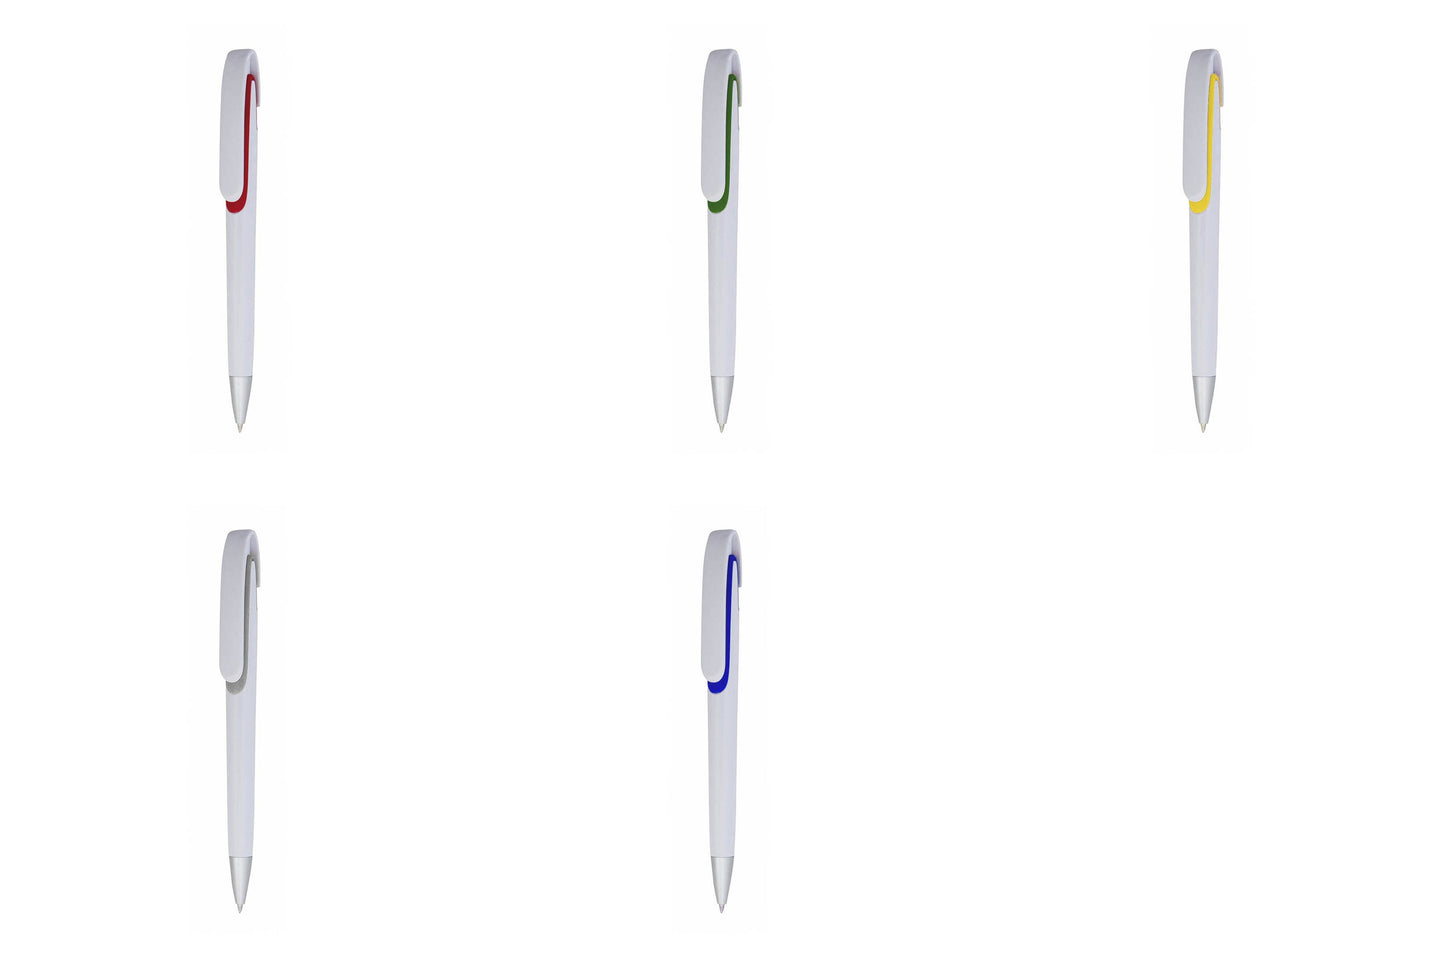 stylo klinch avec Combinaison de couleurs vives sur les attributs pour un style audacieux.